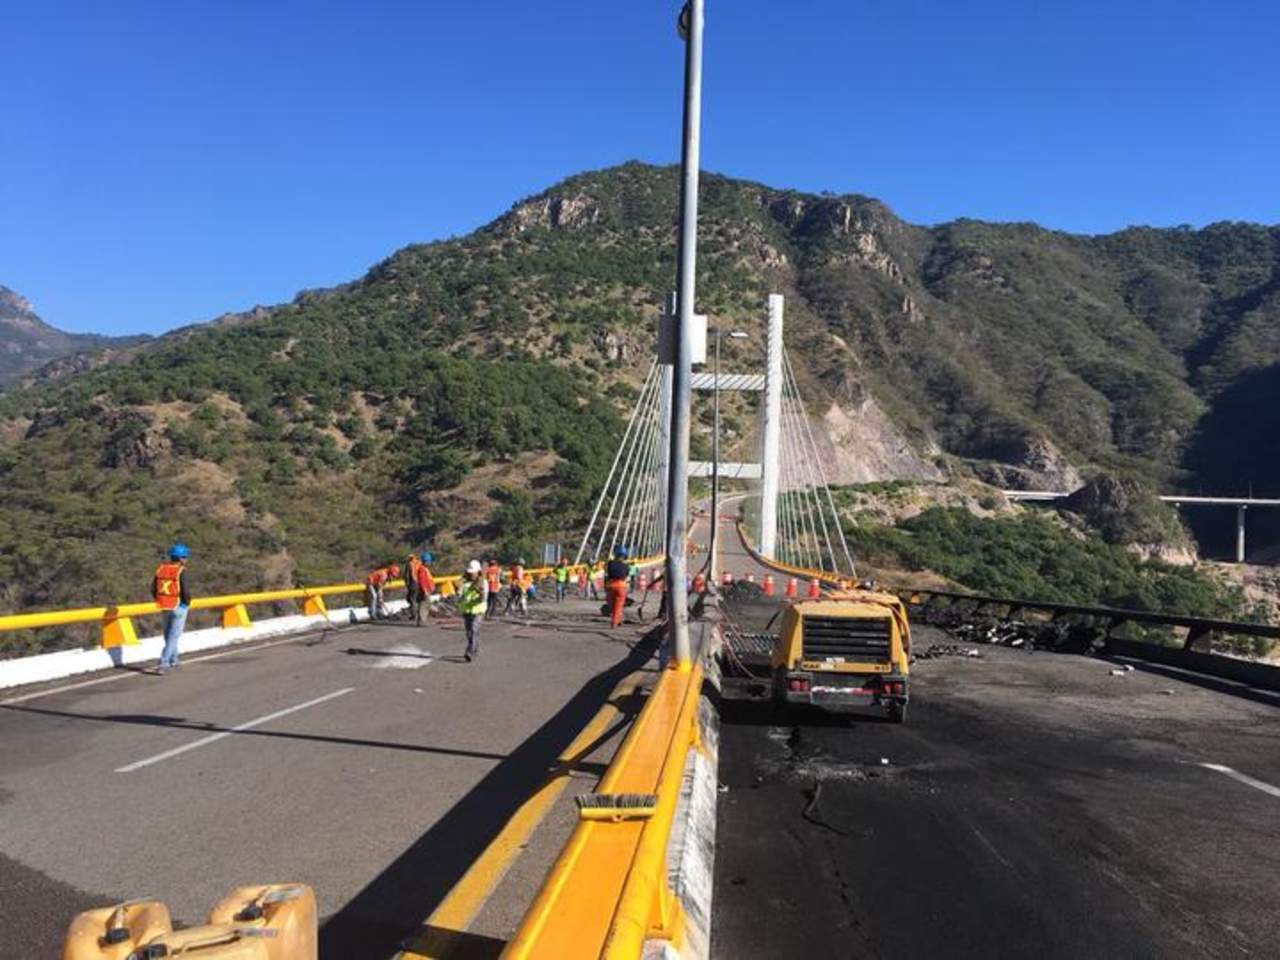 La supercarretera está cerrada en uno de sus tramos desde el pasado viernes 12 de enero. (ARCHIVO)

